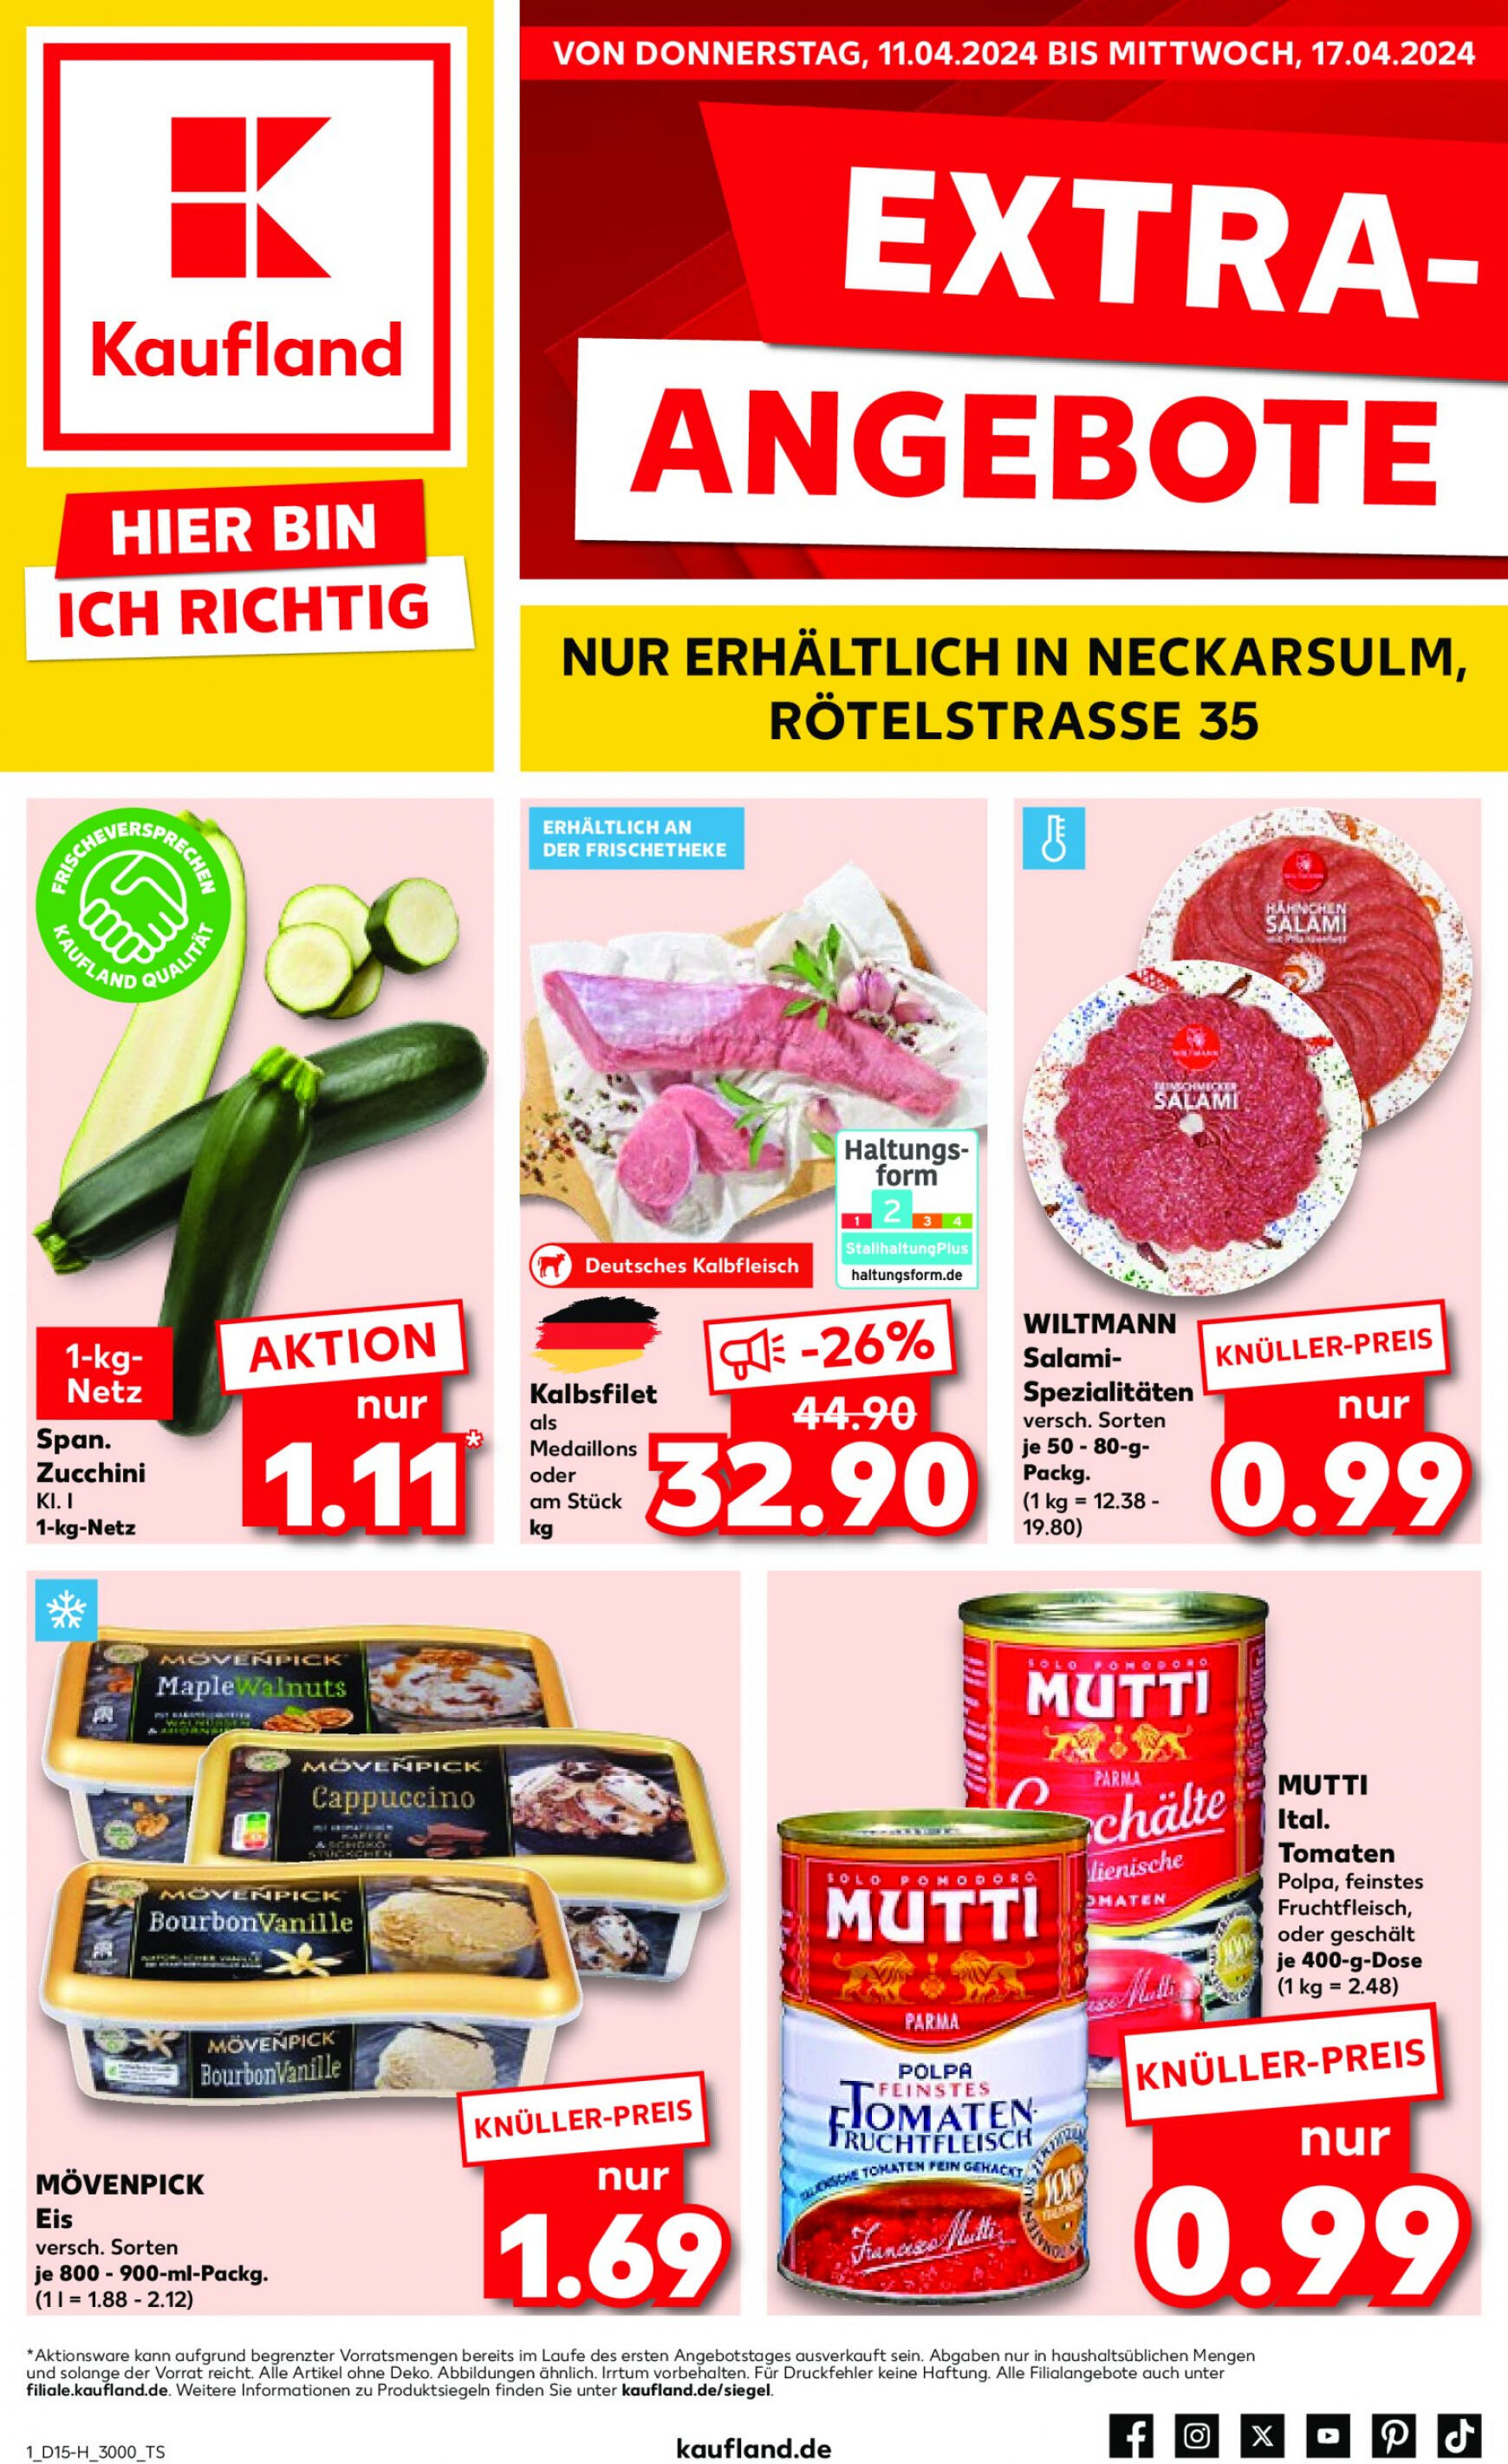 kaufland - Flyer Kaufland - Extra Angebote aktuell 11.04. - 17.04.